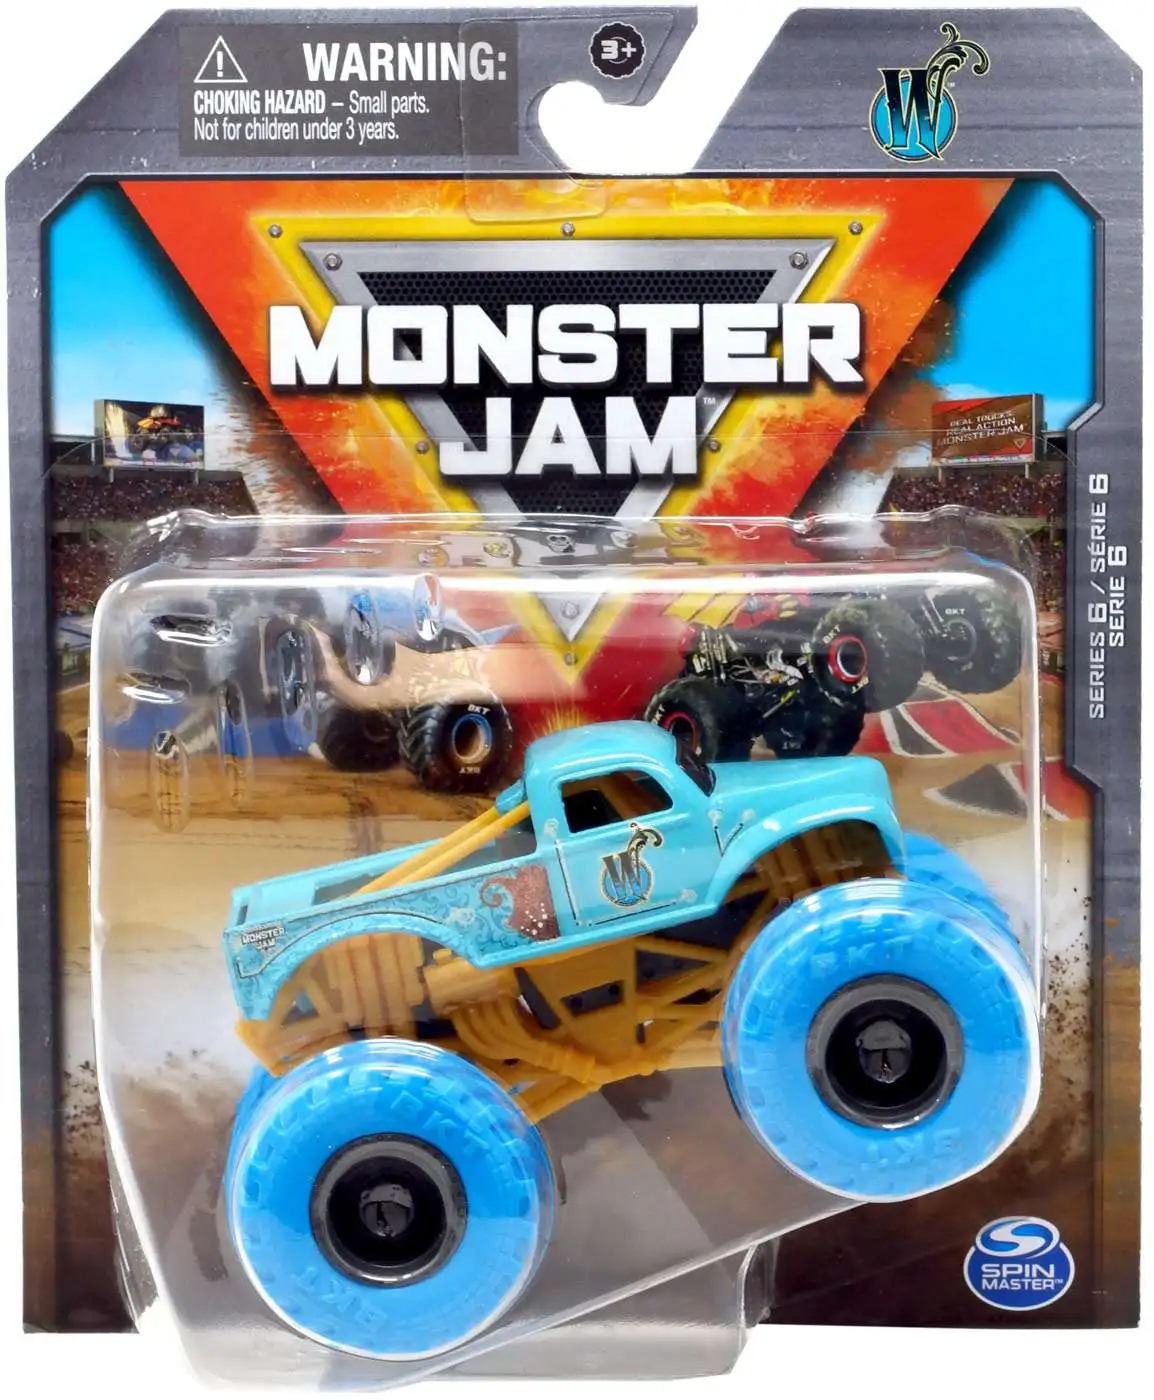 Monster Jam Monster Dirt Refill 3-Pack - Kinetic Sand - 5 Ounces Per Pack